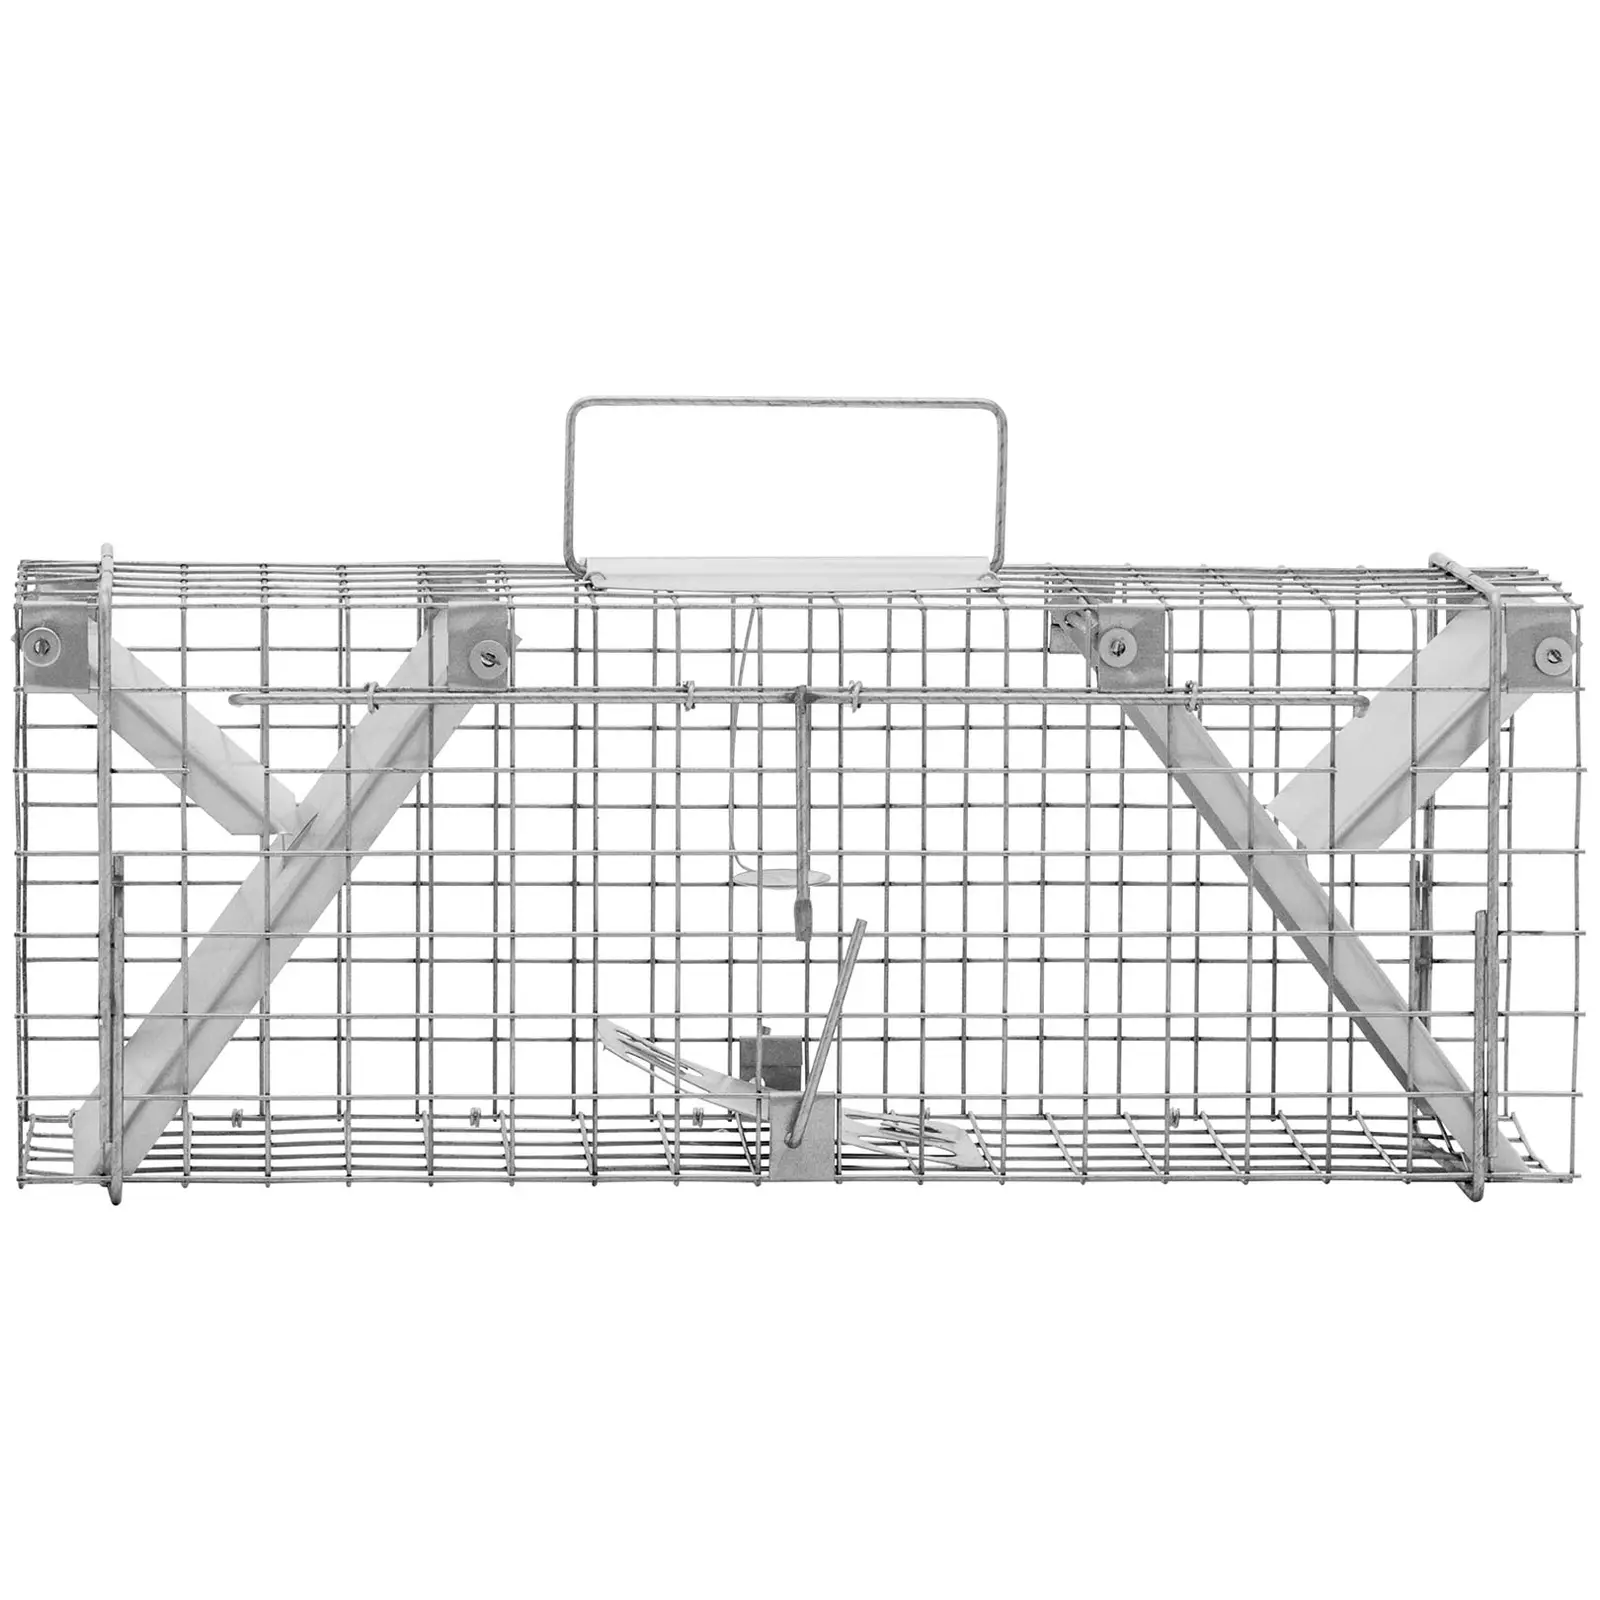 Trappola per animali - 50 x 20 x 17 mm - Dimensioni della grata: 25 x 25 mm - 2 pezzi